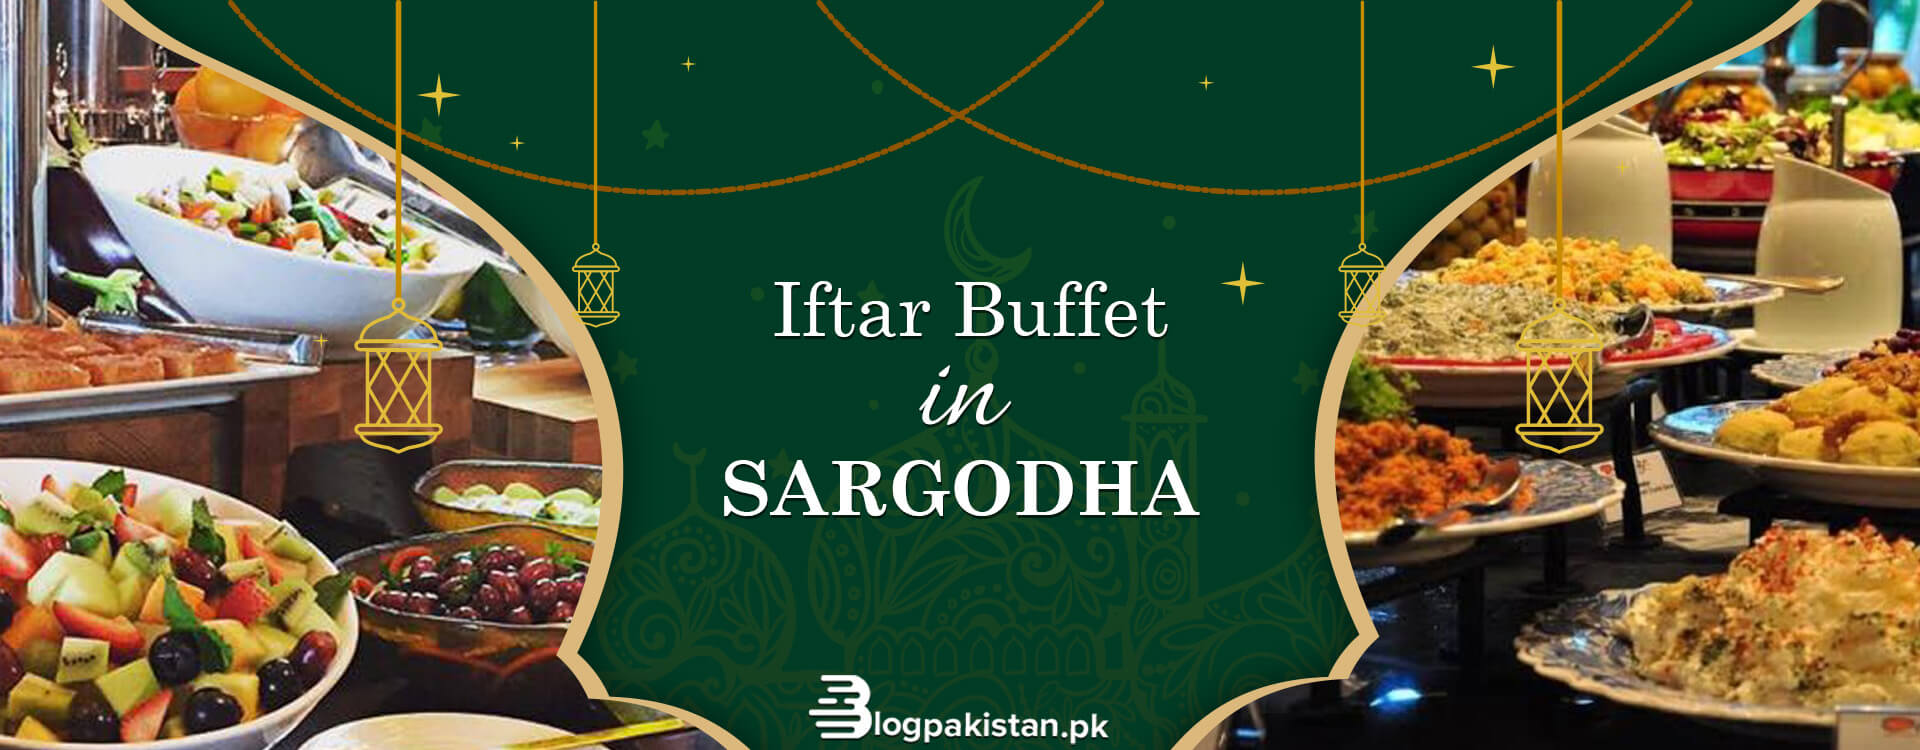 Iftar Buffet in Sargodha